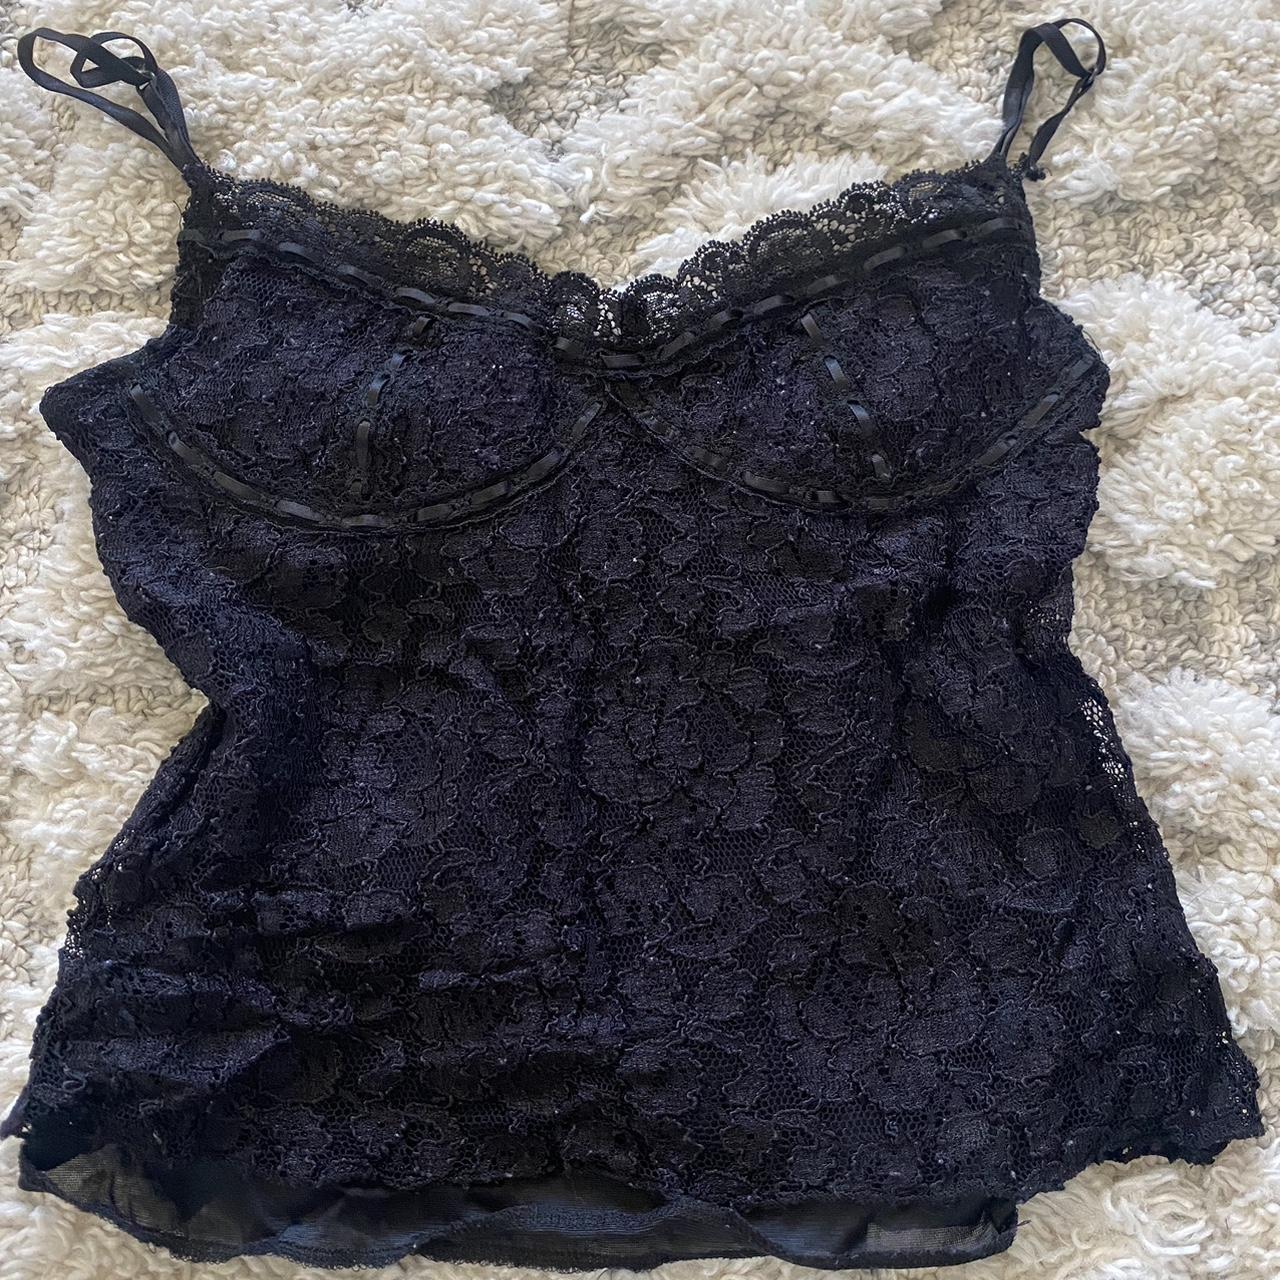 Vintage 2000s black lace cami No size best fits a... - Depop